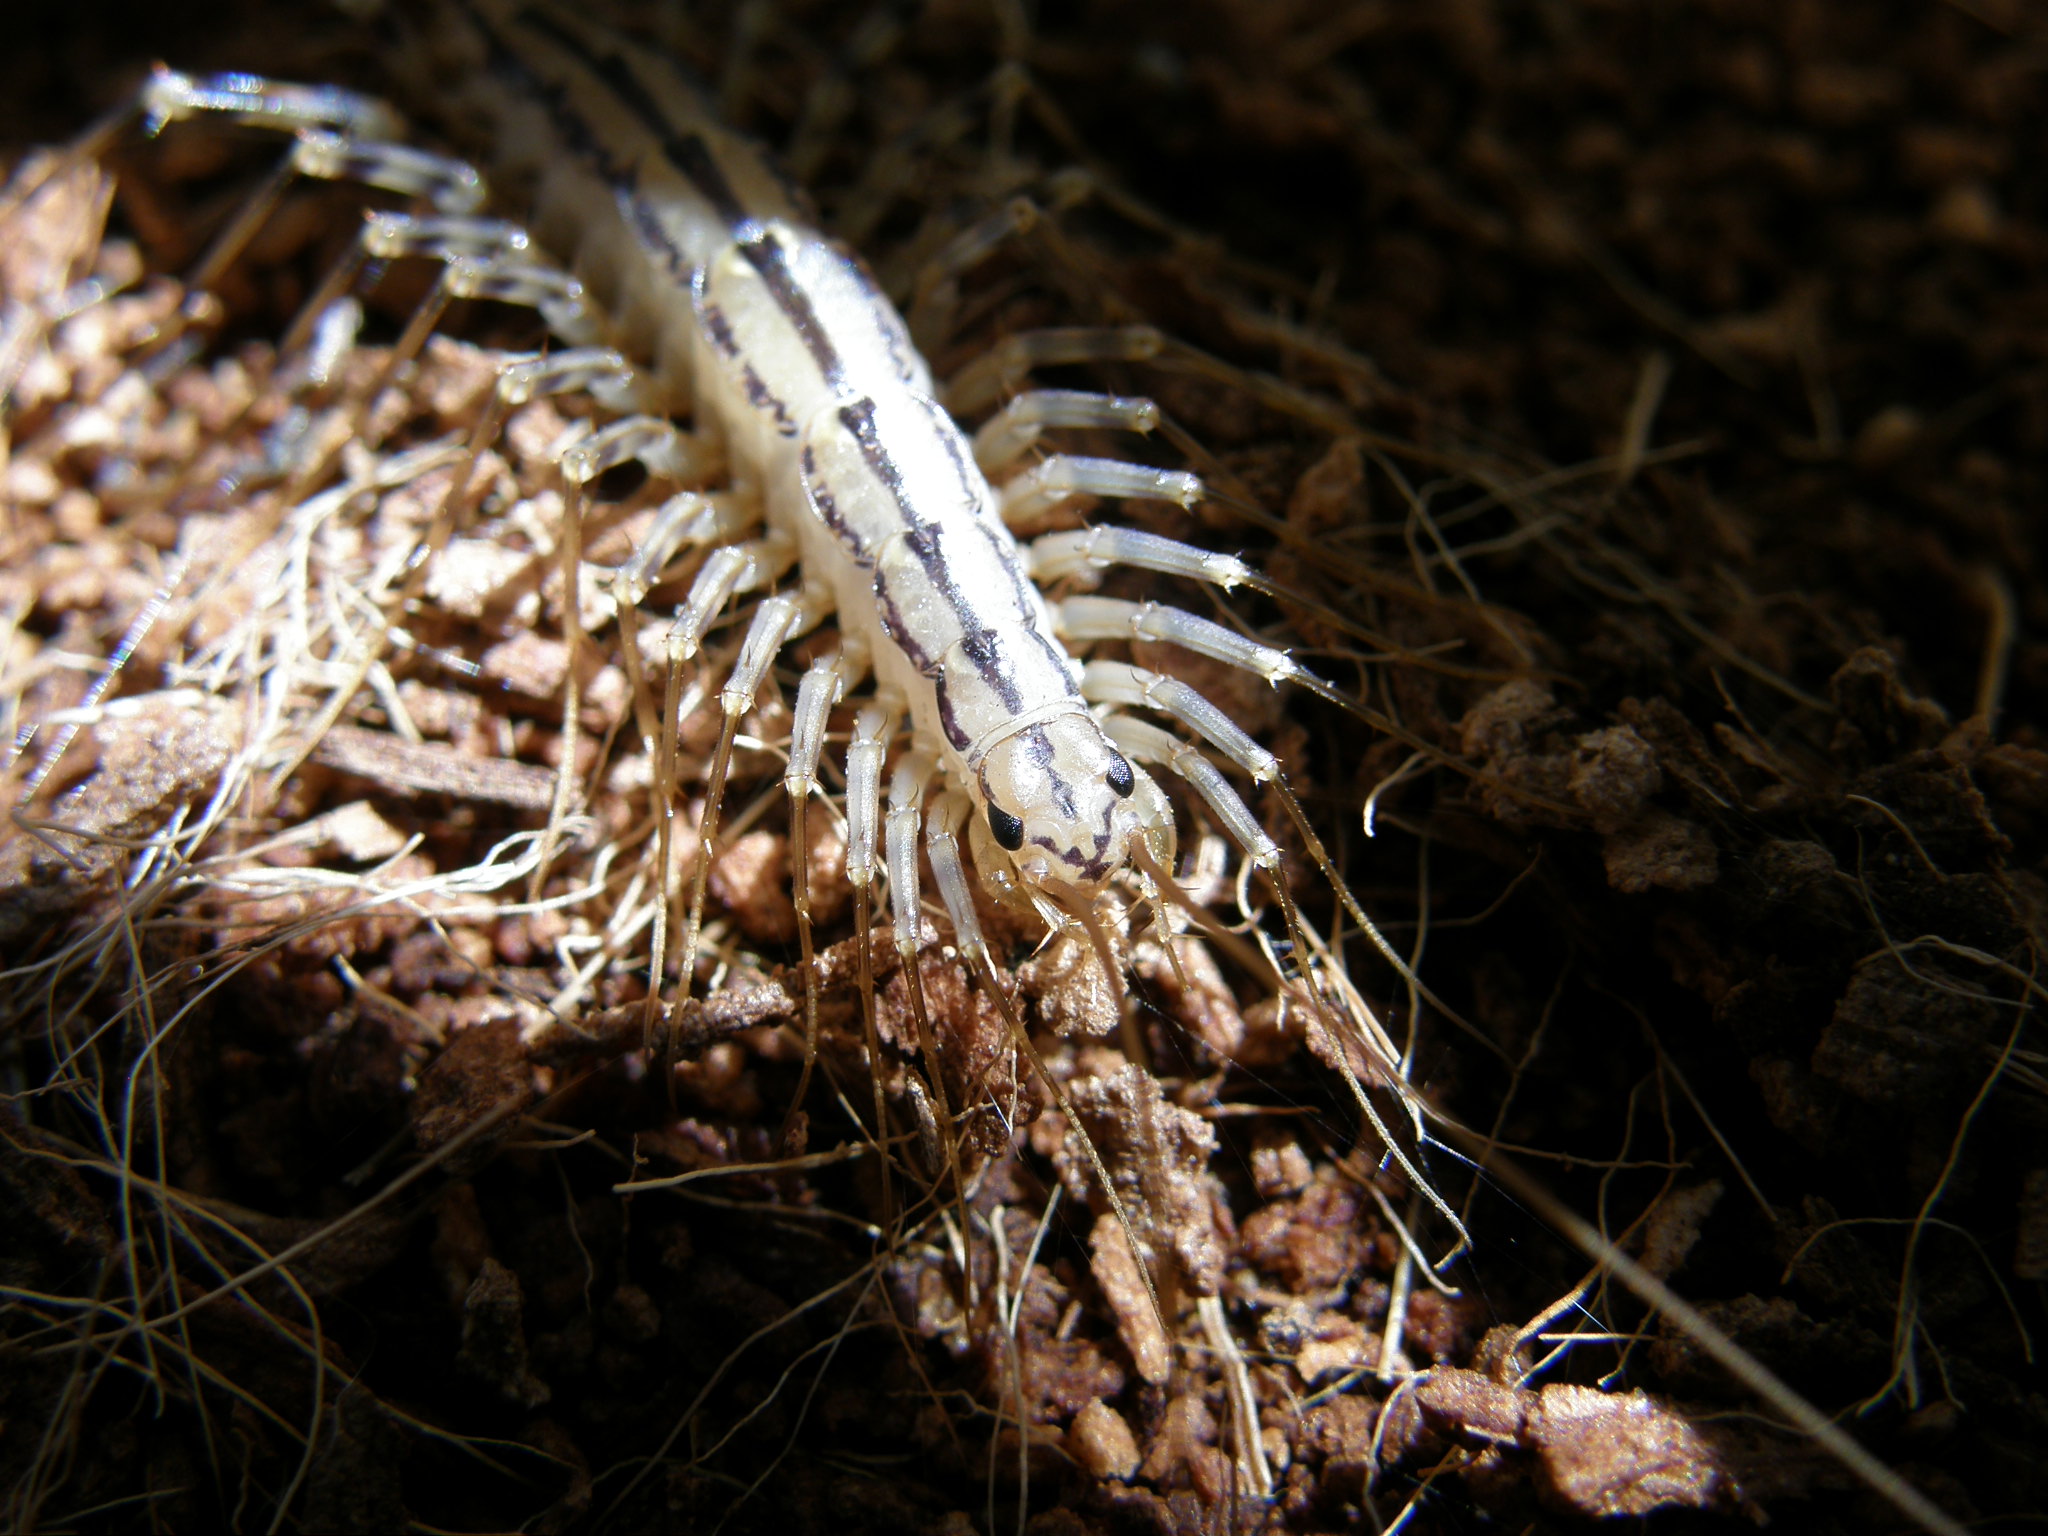 Мухоловка обыкновенная (Scutigera coleoptrata)